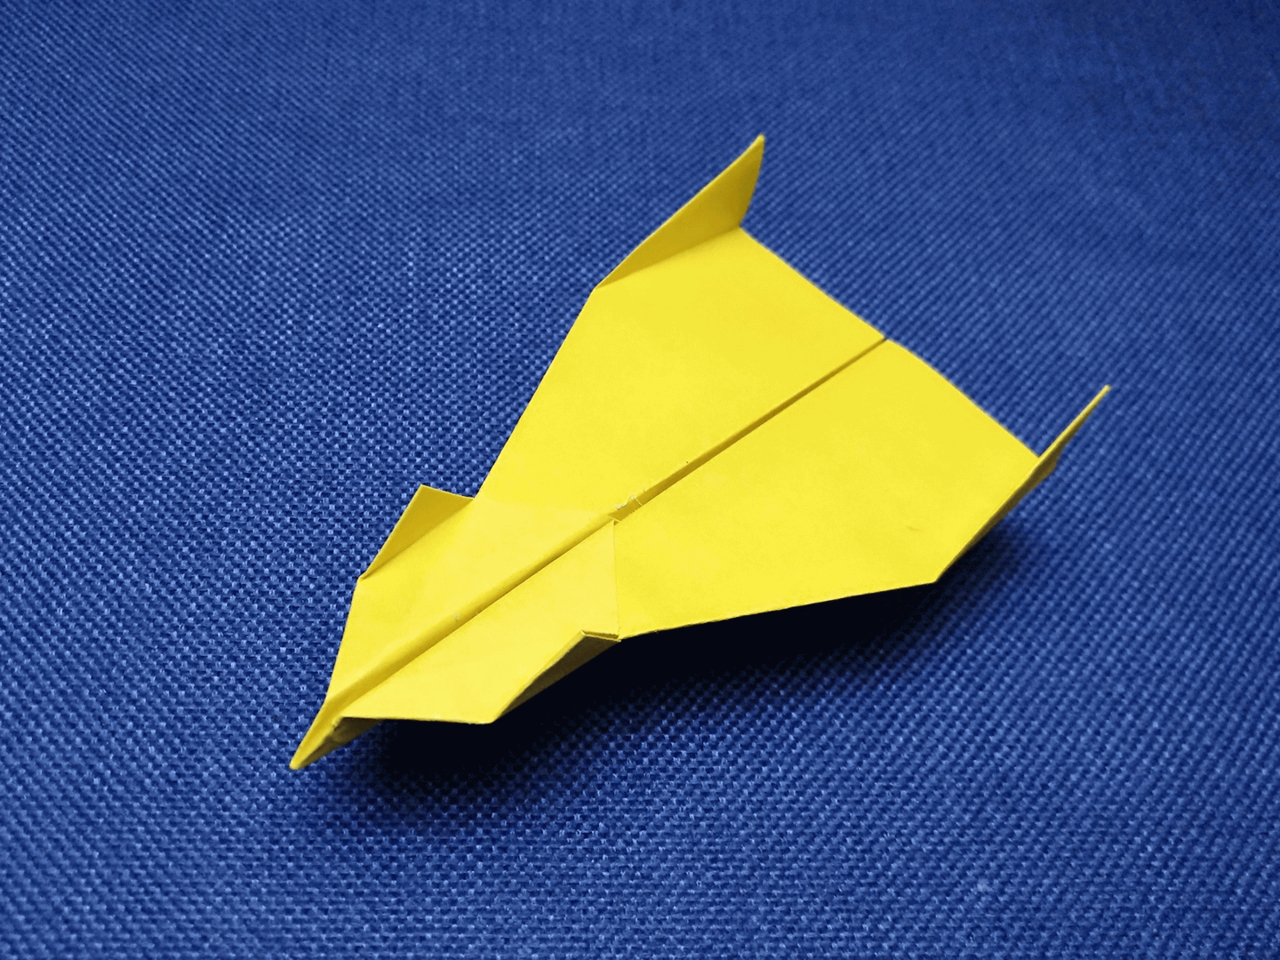 3战斗纸飞机的折法  01:11  来源:经验视频-折纸战斗纸飞机小秒招 4